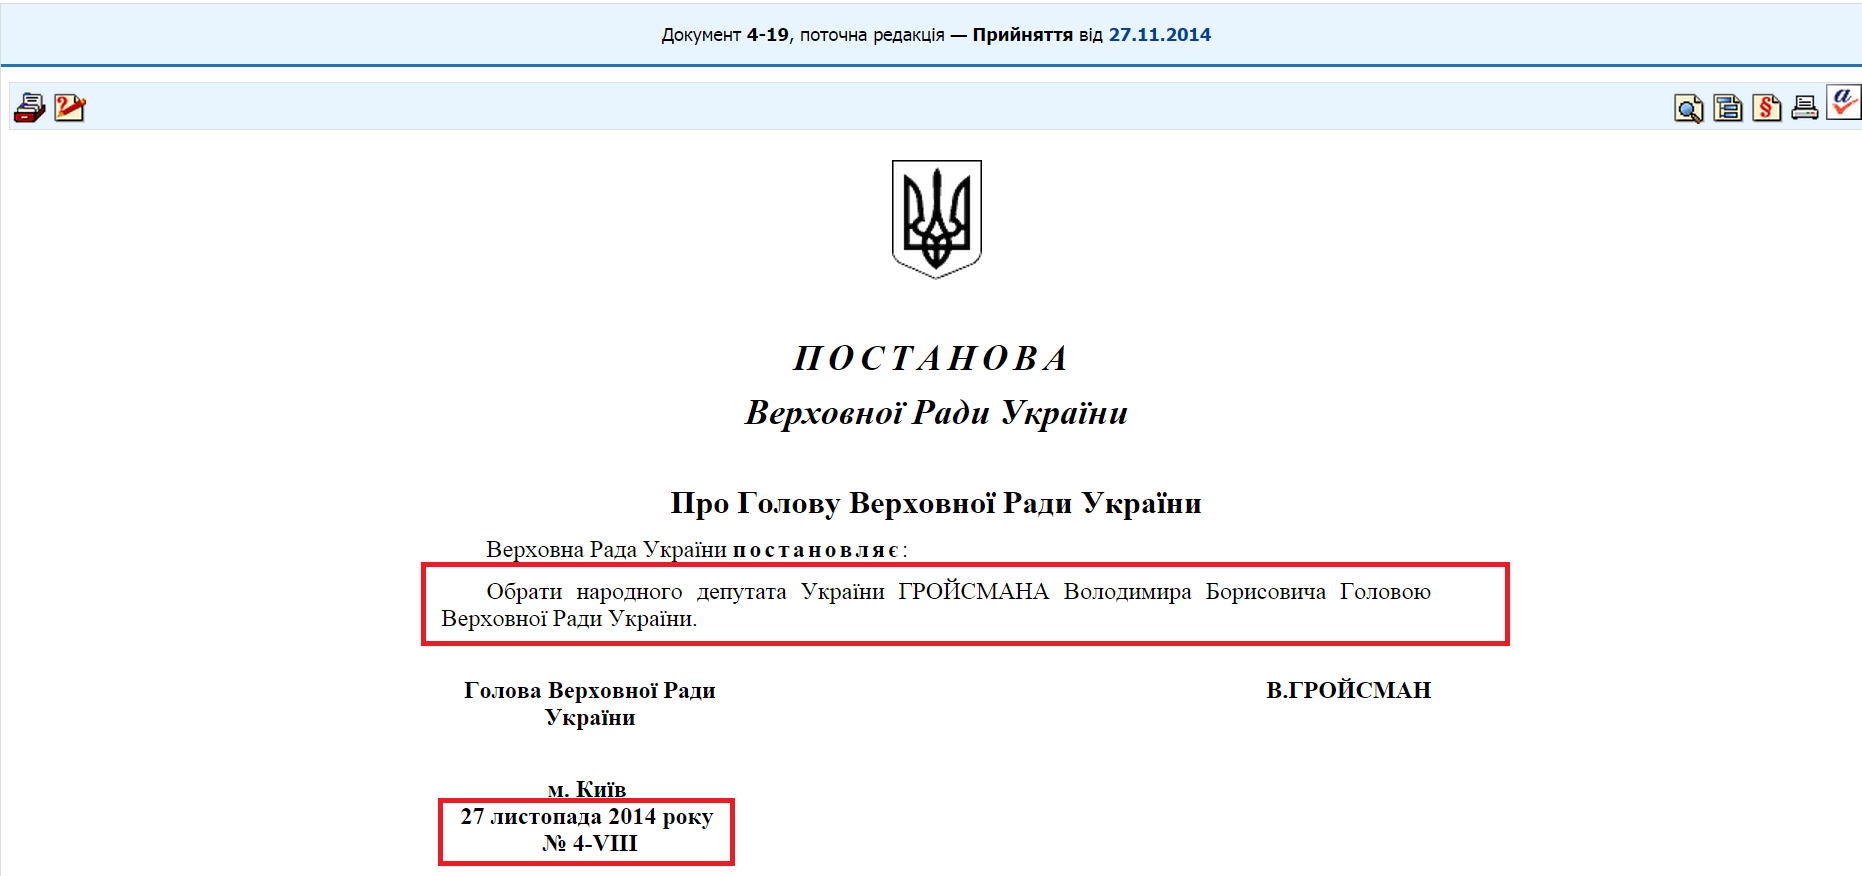 http://zakon4.rada.gov.ua/laws/show/4-19